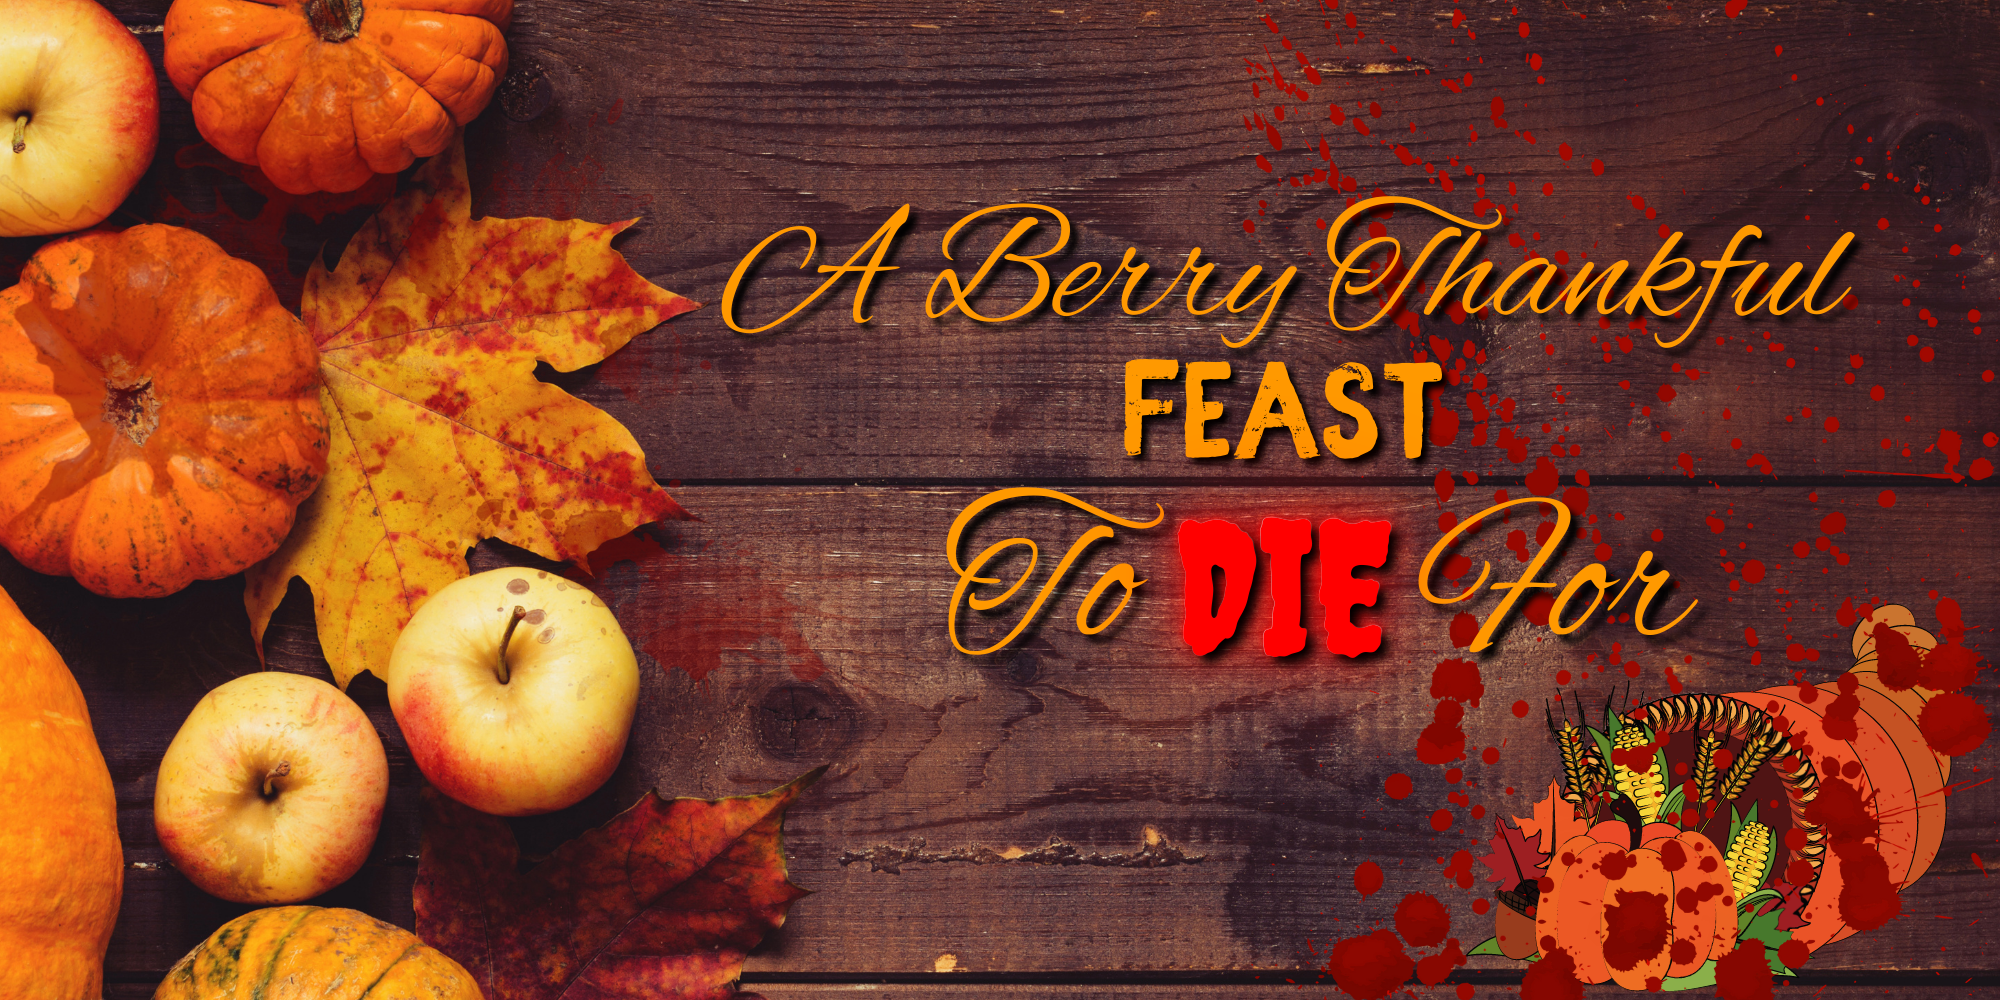 Murder Mystery for Thanksgiving